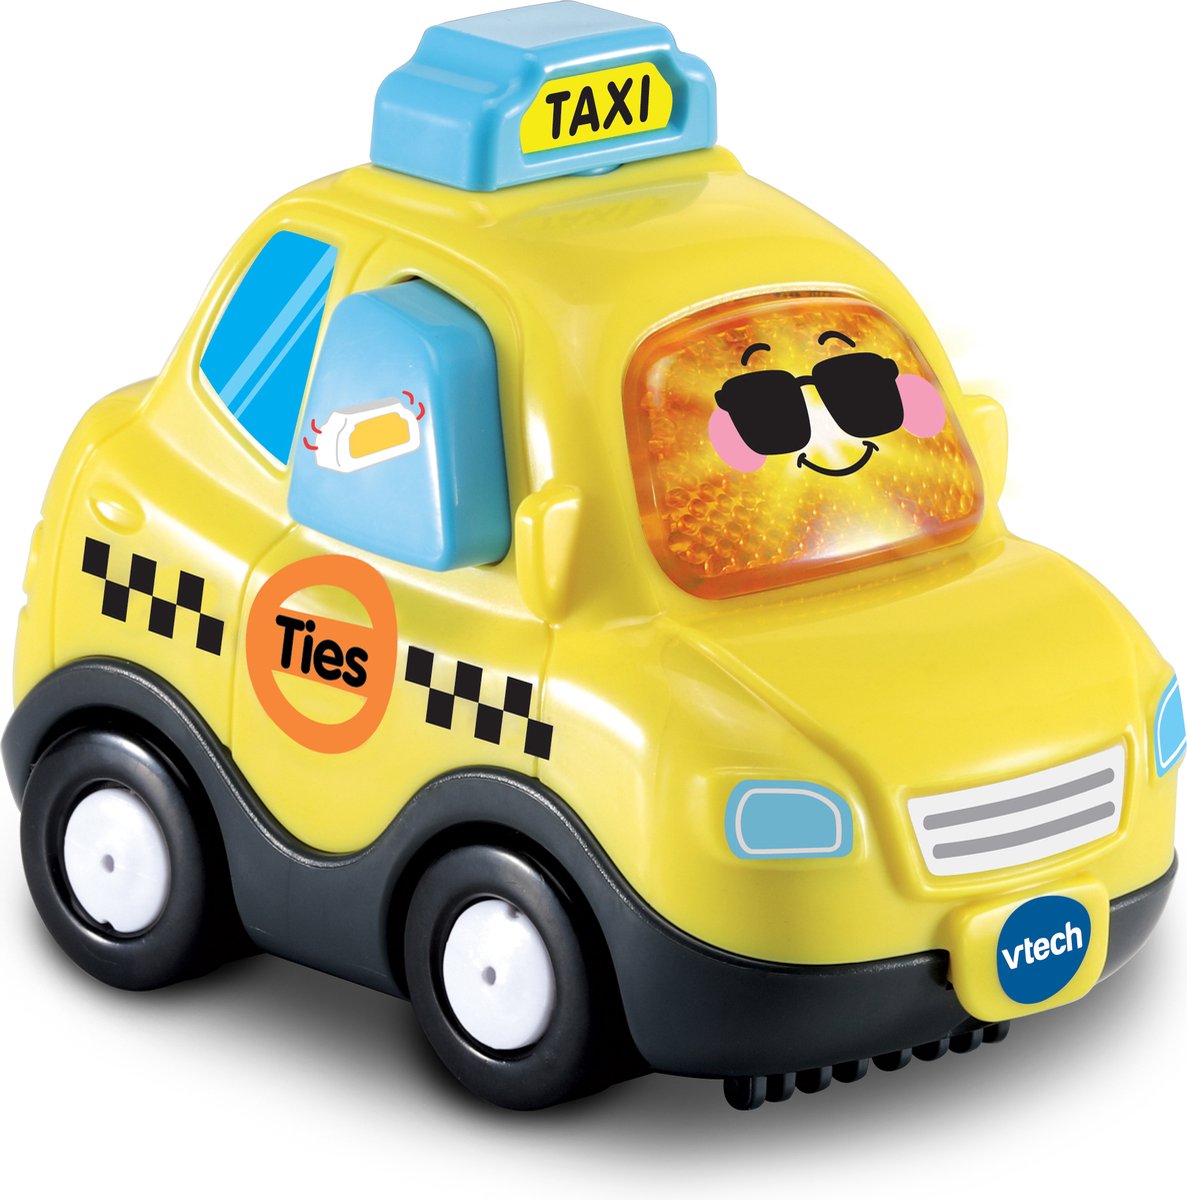 VTech Toet Toet Auto’s Ties Taxi - Speelgoed Auto - Speelfiguur - Interactief & Educatief Speelgoed - Licht- en Geluidseffecten – 1 tot 5 Jaar - VTech